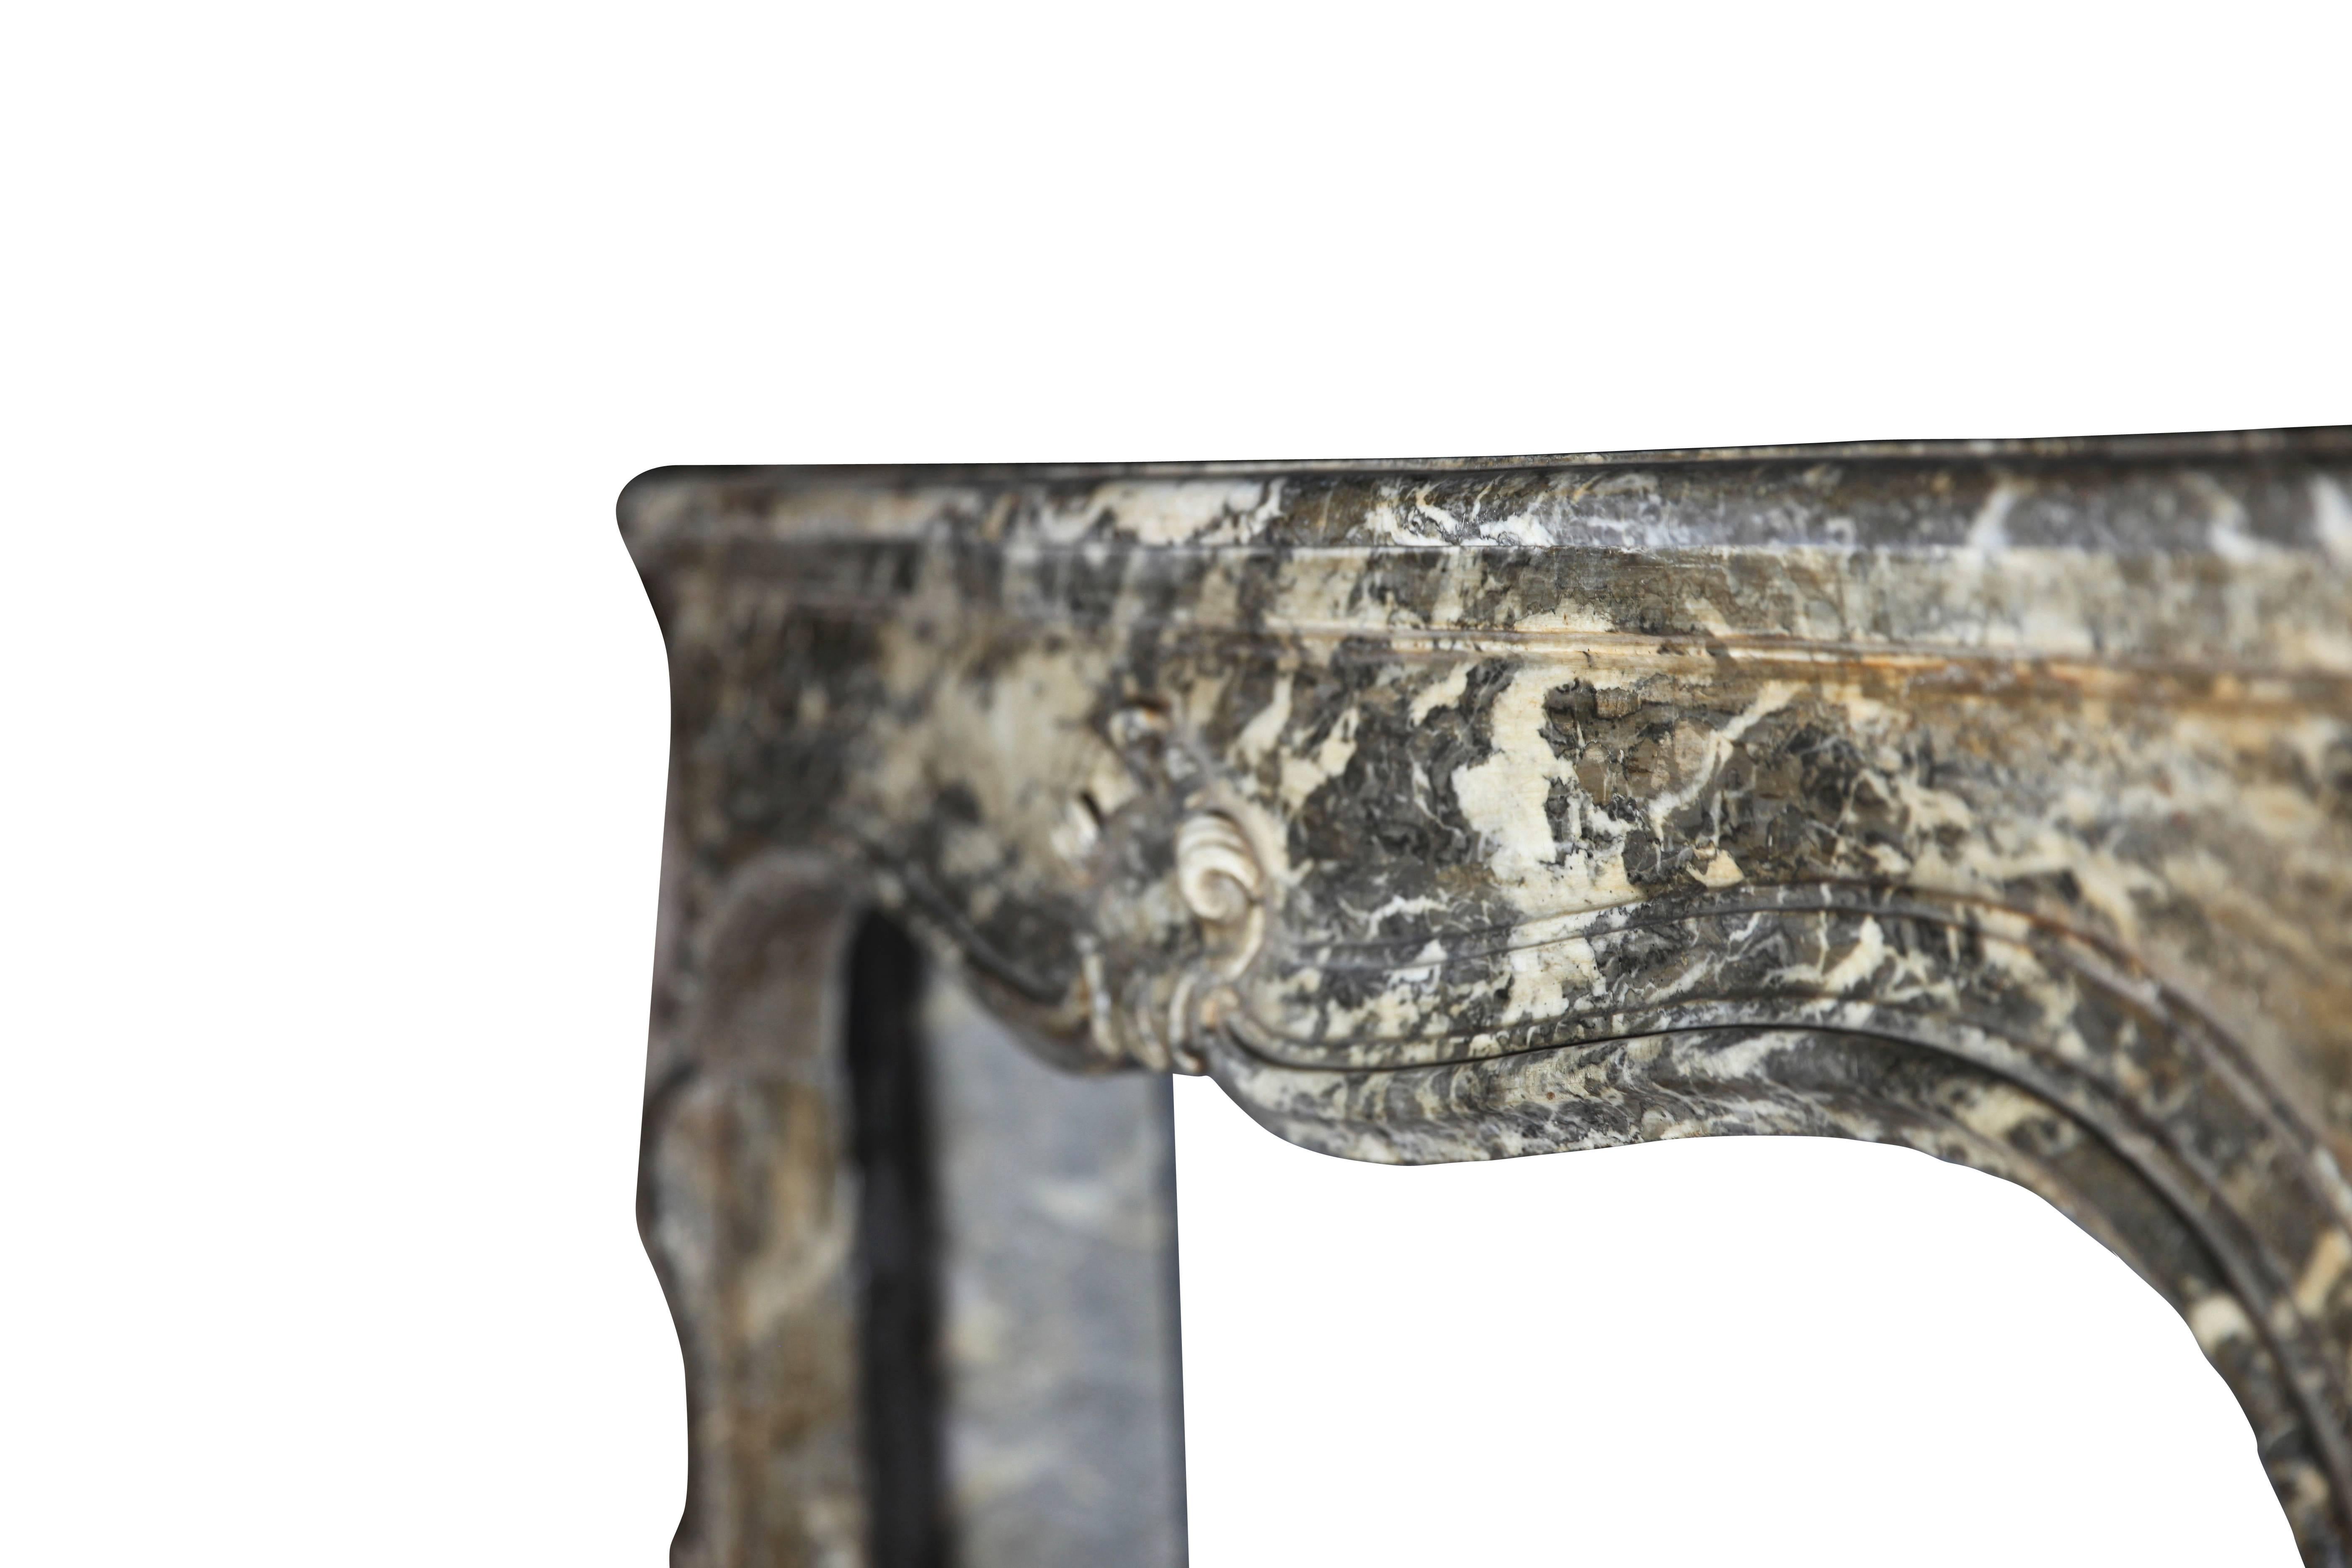 Ein seltener antiker Kaminsims (Kamin) aus typisch belgischem grauem Marmor aus dem 
Periode Ludwig XIV. Die diskreten Details im Fronton sind großartig. Die Fassade ist nach außen gewölbt. Zart mit einer tollen Patina.

Maßnahmen:
148 cm EW